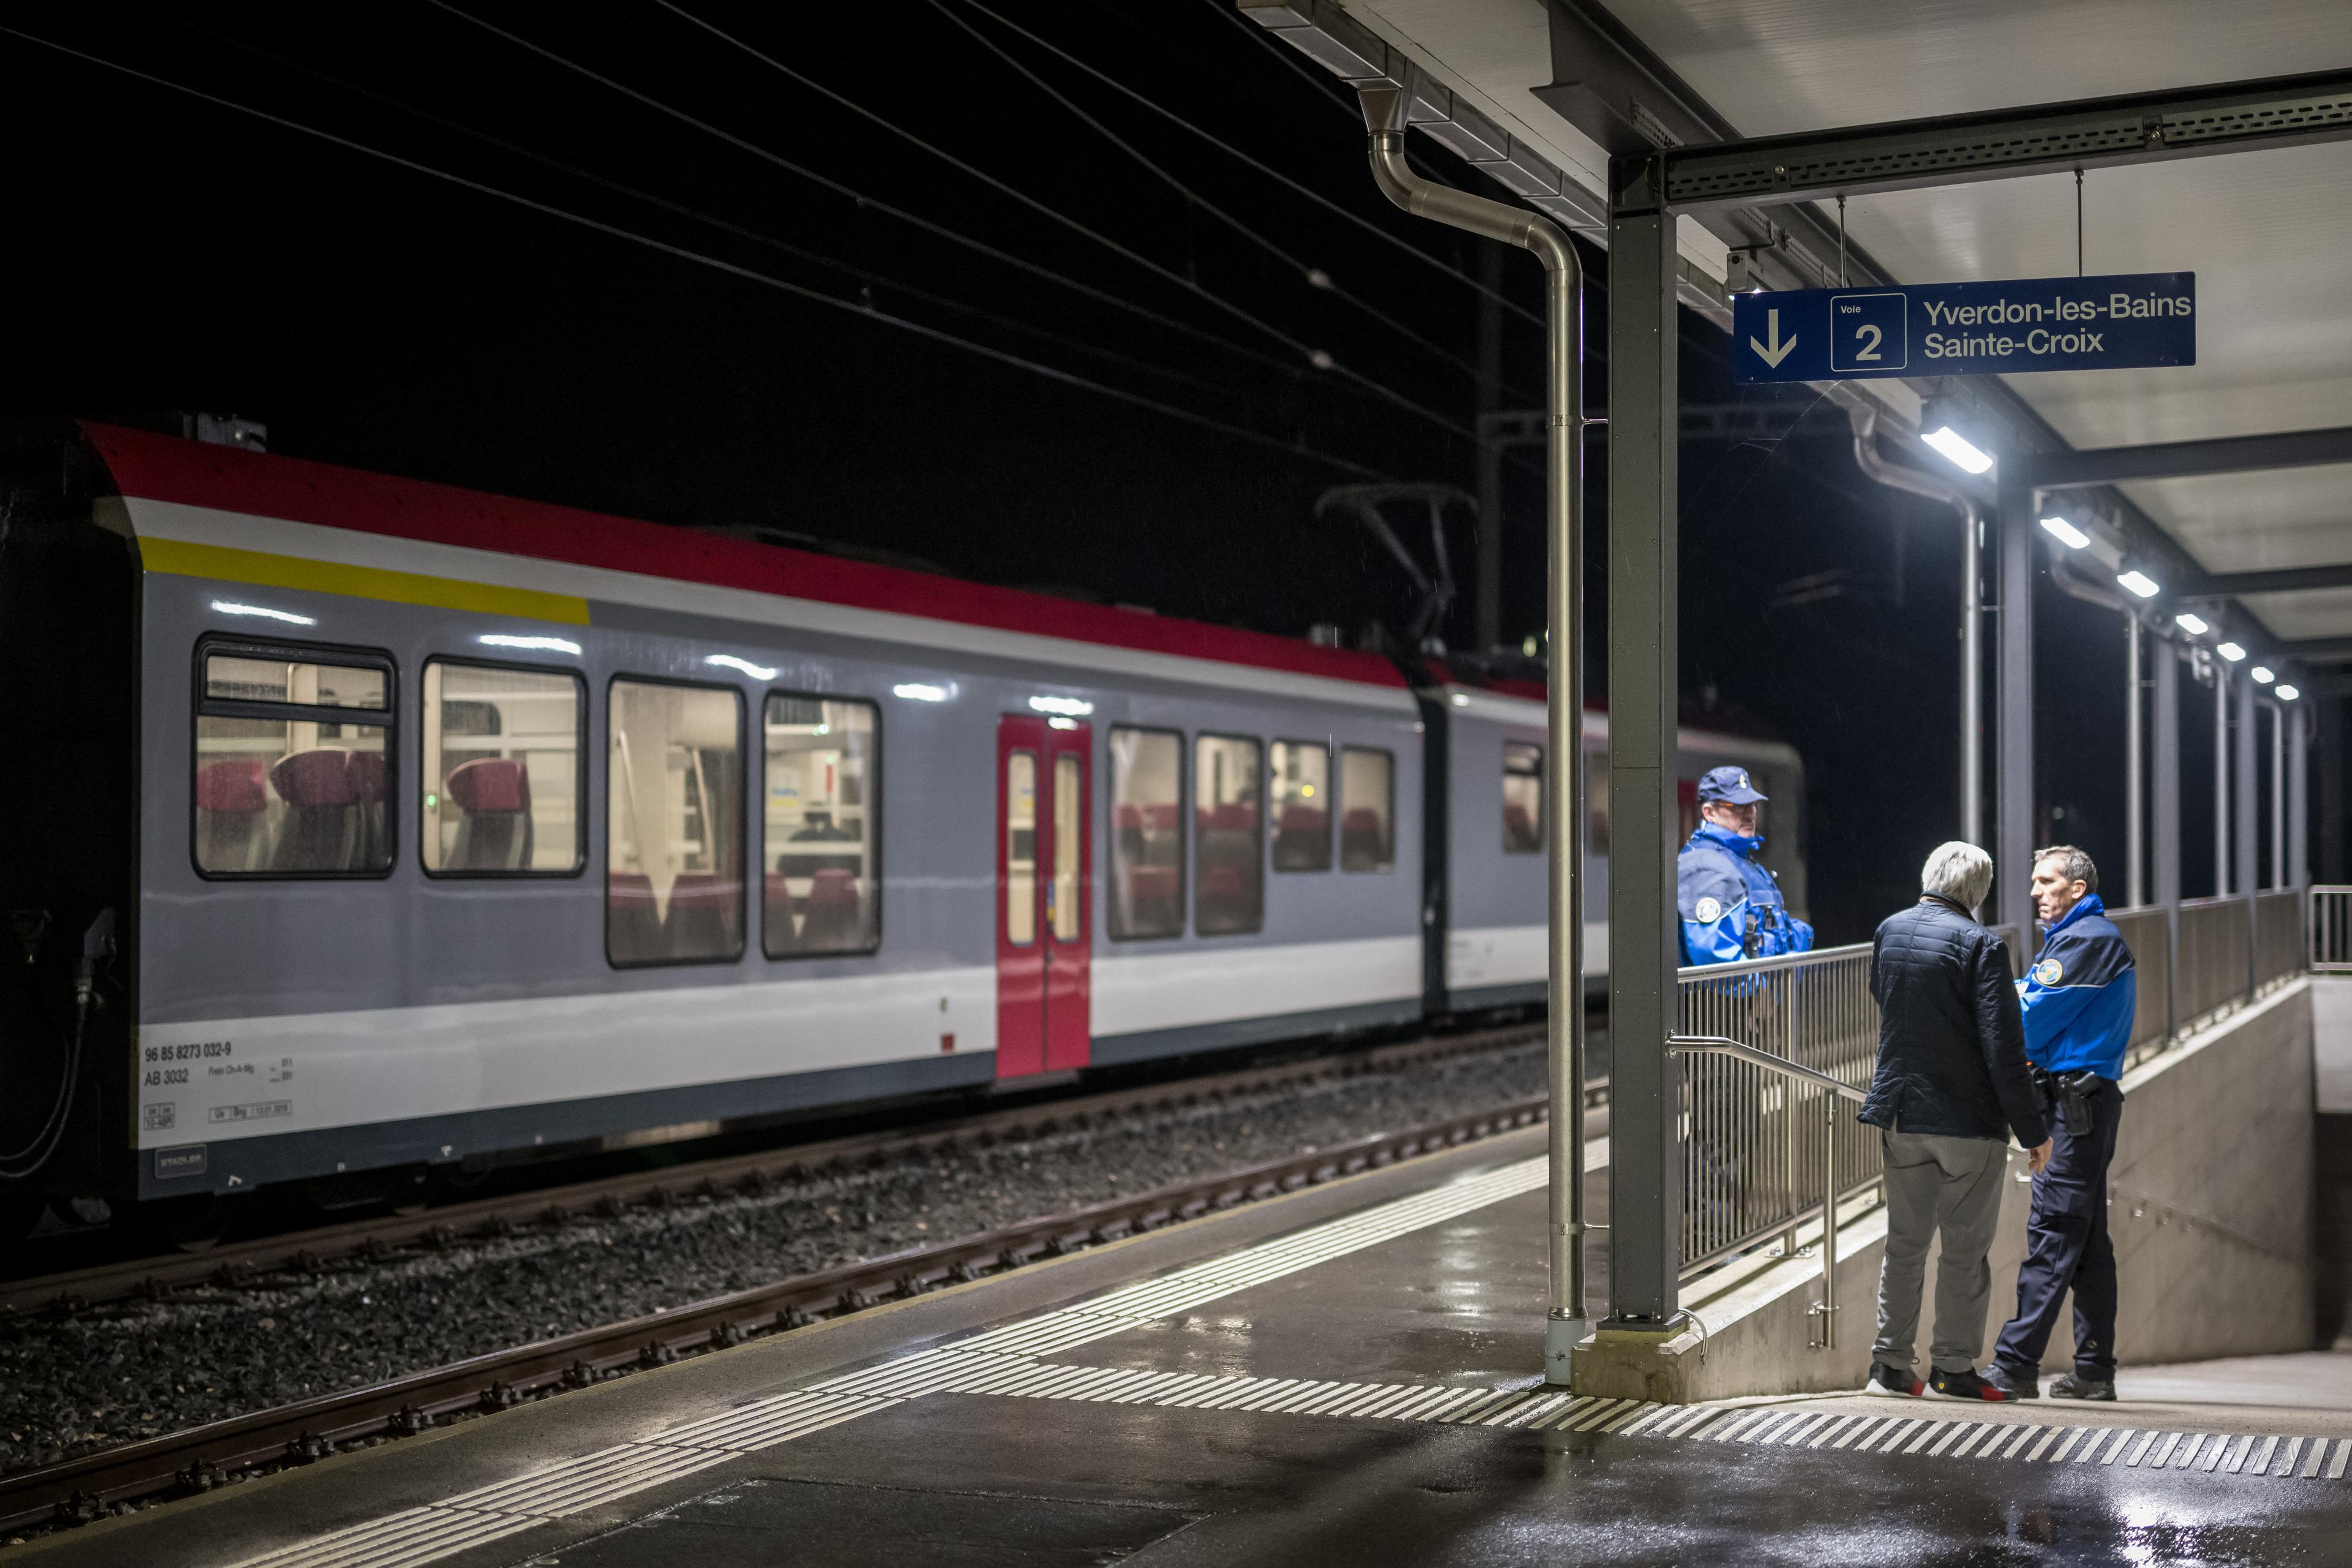 Schweiziska poliser i Essert-Sous-Champvent i västra Schweiz står bredvid ett tåg där passagerare på väg från Yverdon till Sainte-Croix tidigare hölls som gisslan den 8 februari. Foto: Fabrice Coffrini/AFP via Getty Images